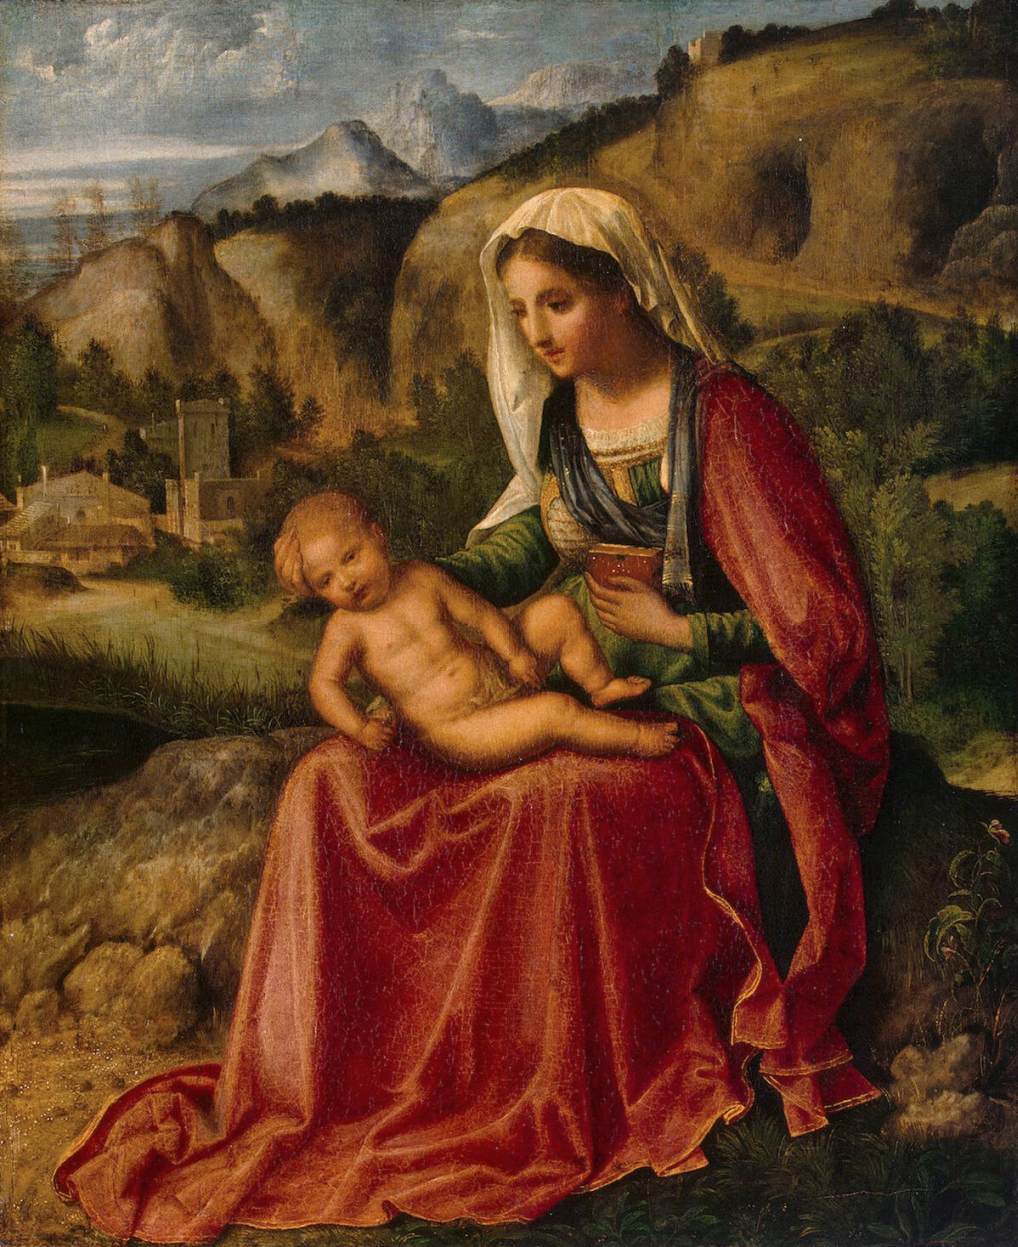 La Virgen y el Niño en un Paisaje